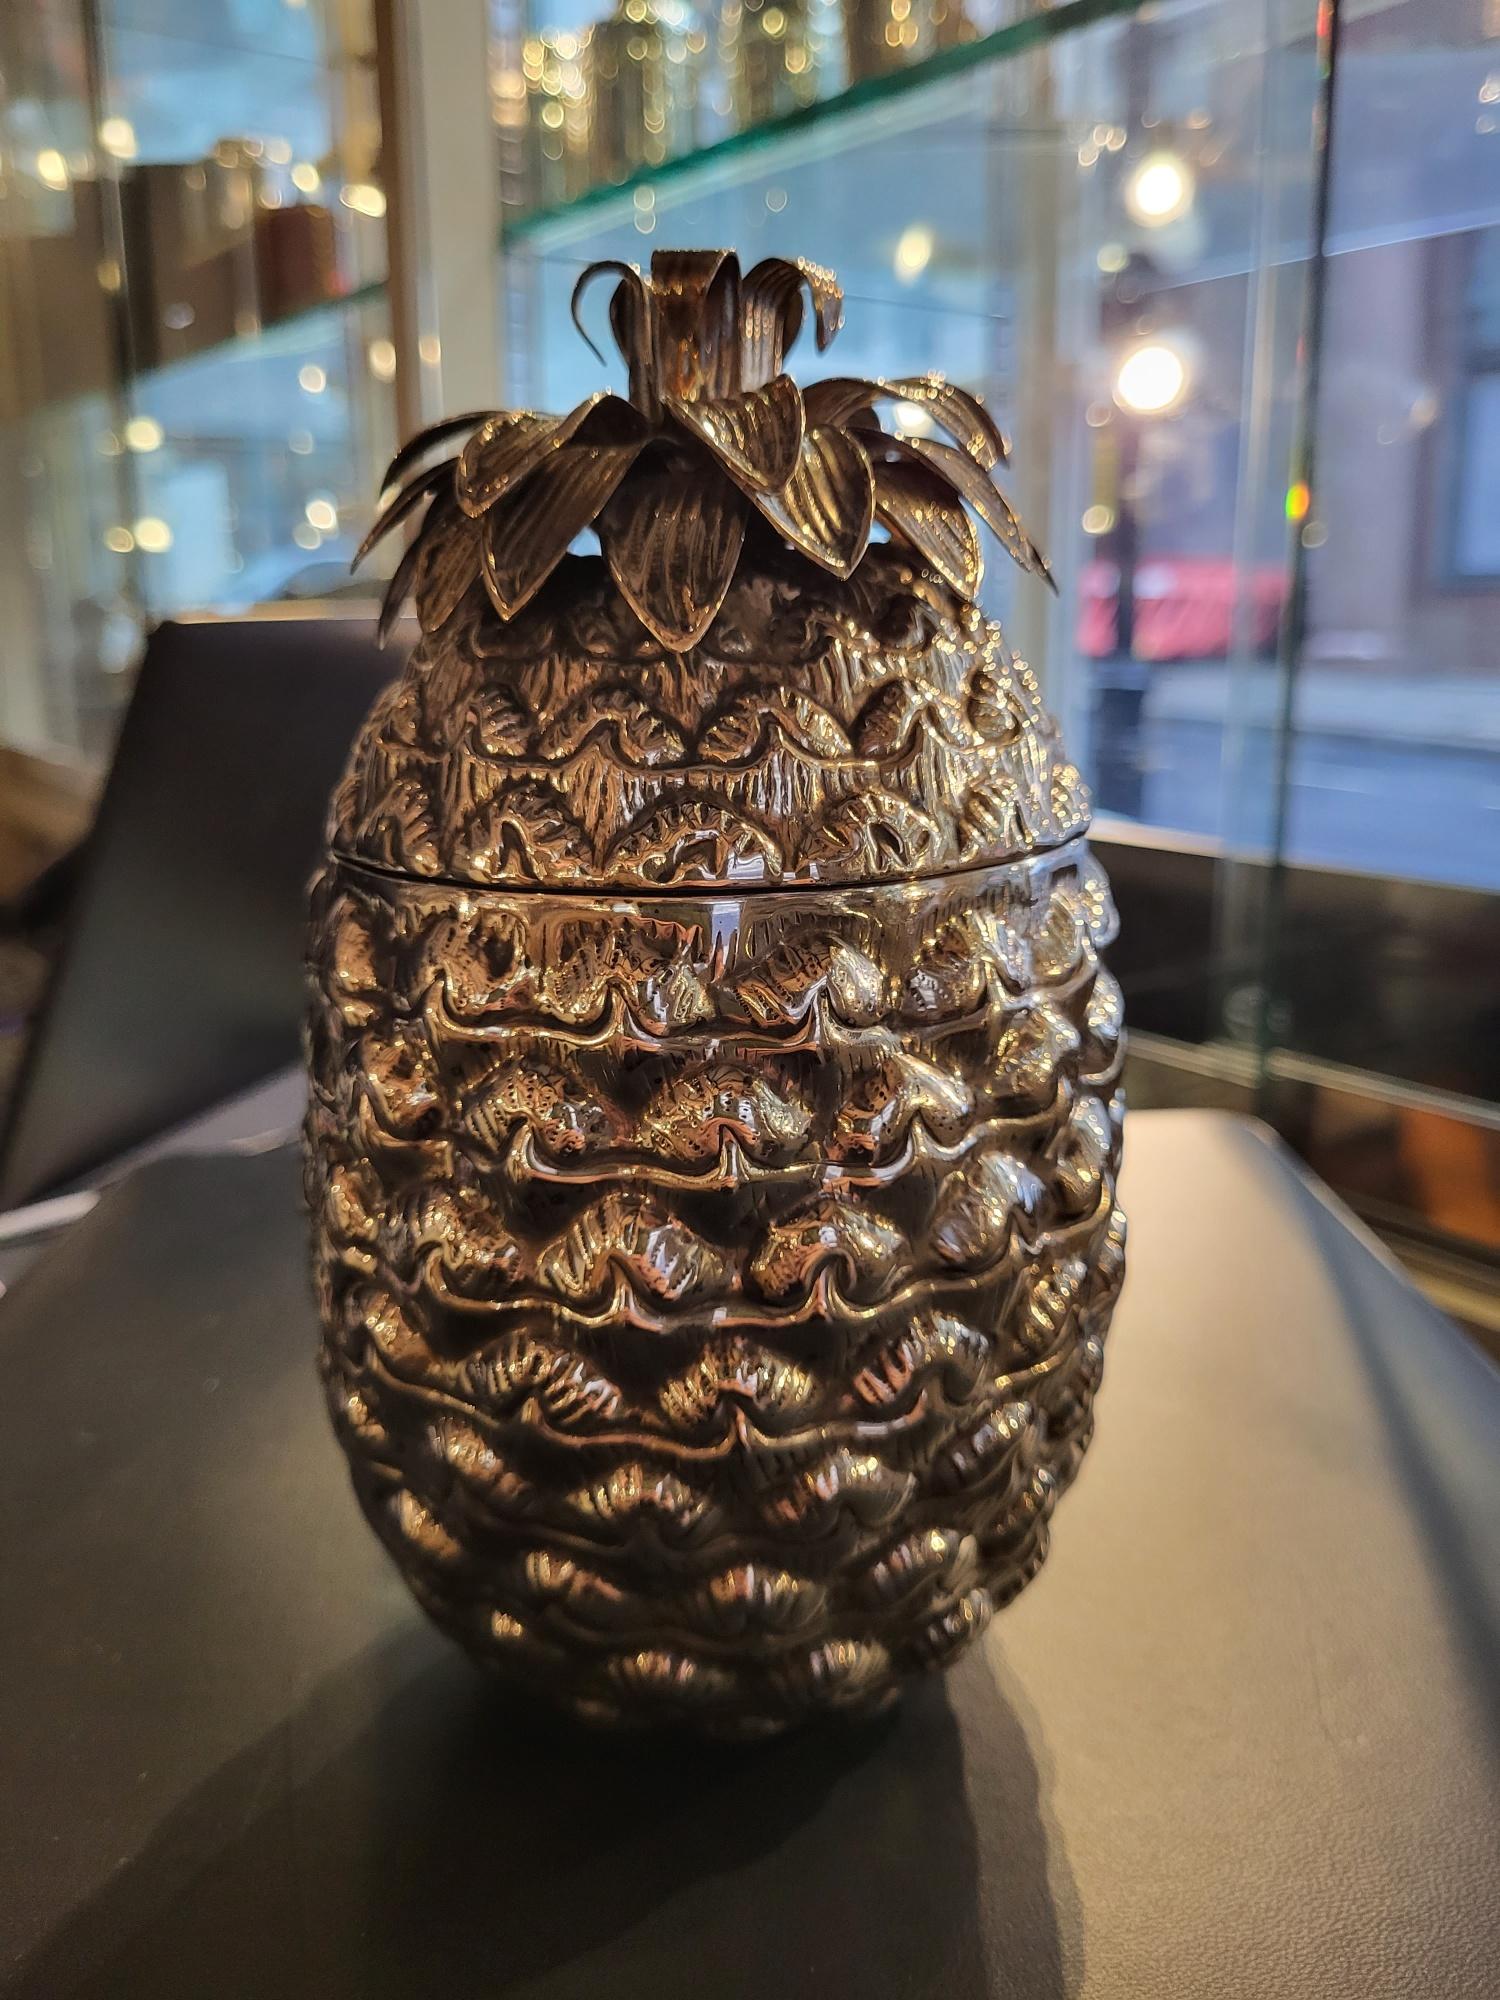 Alessandria, Italie

Une boîte à couvercle en forme d'ananas en argent extrêmement inhabituelle et décorative, ou qui peut peut-être être utilisée comme seau personnel pour les glaçons, avec un corps modelé de façon réaliste avec une couronne de